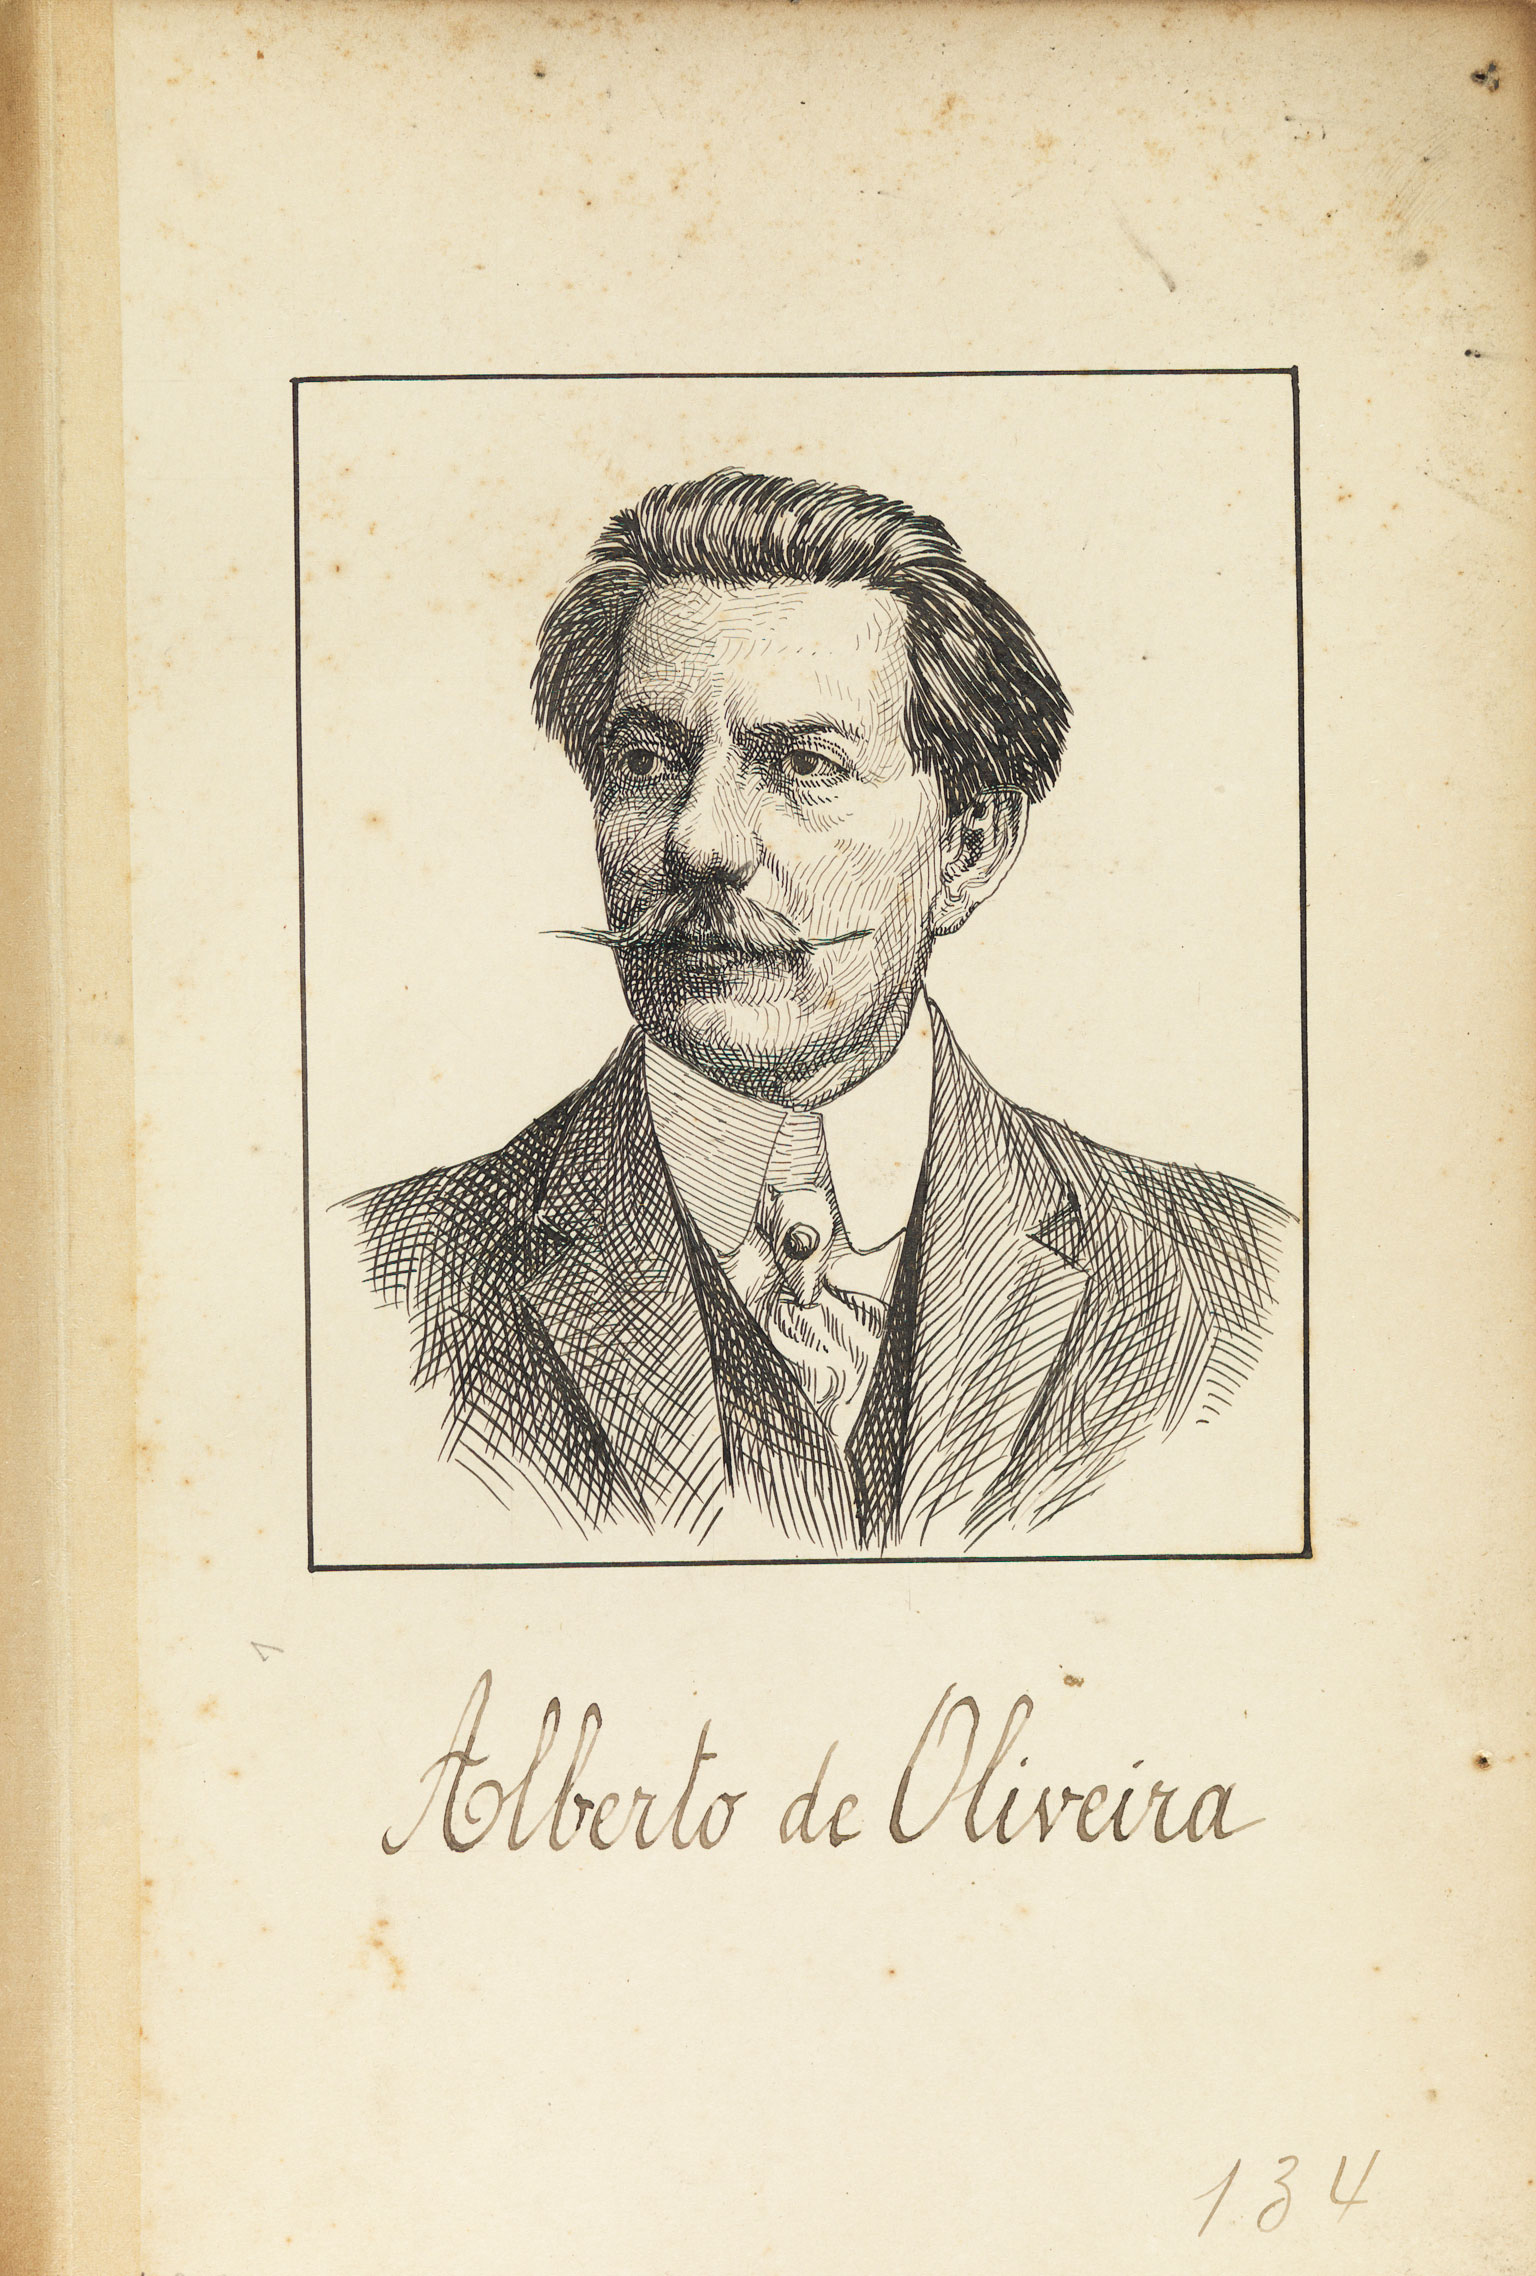 Pintura antiga e em preto e branco do farmacêutico Alberto de Oliveira. Ele usa terno com camisa por baixo e uma gravata, tem cabelos na altura das orelhas e um bigode com as pontas finas e retas para os lados.